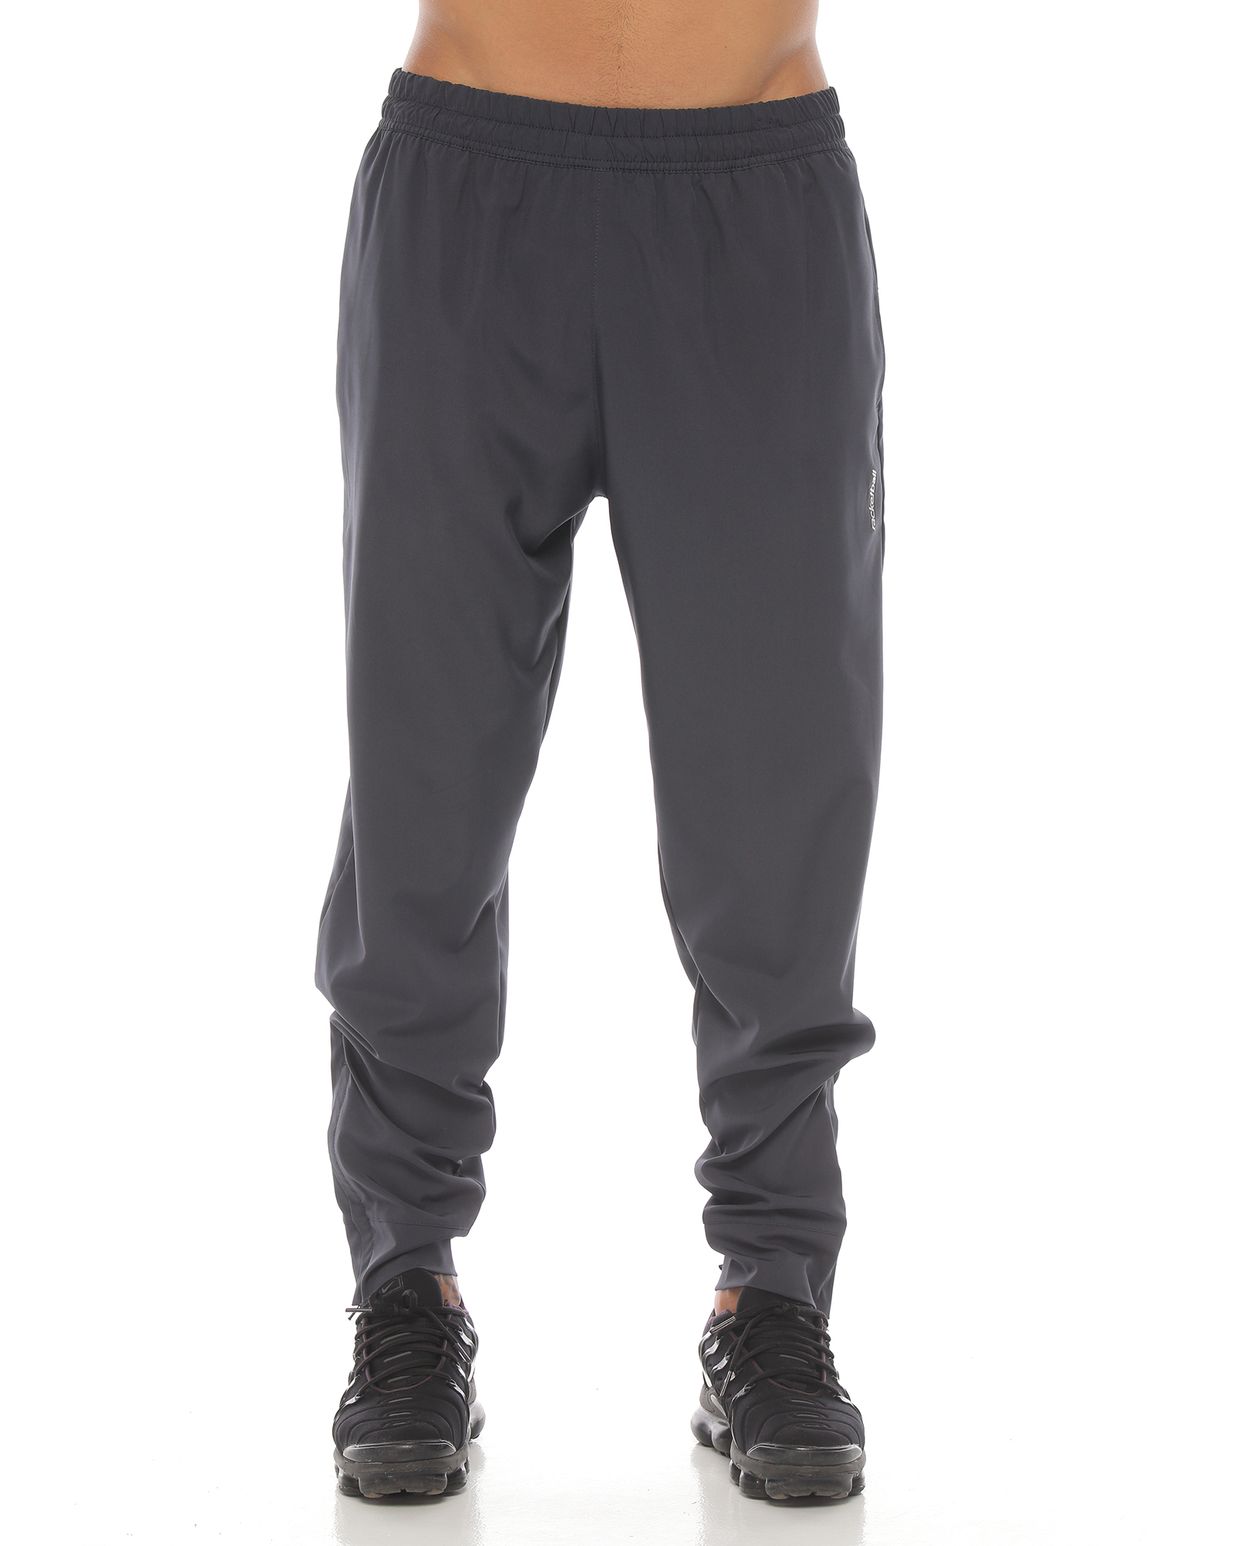 pantalón deportivo para hombre, color gris oscuro - racketball movil